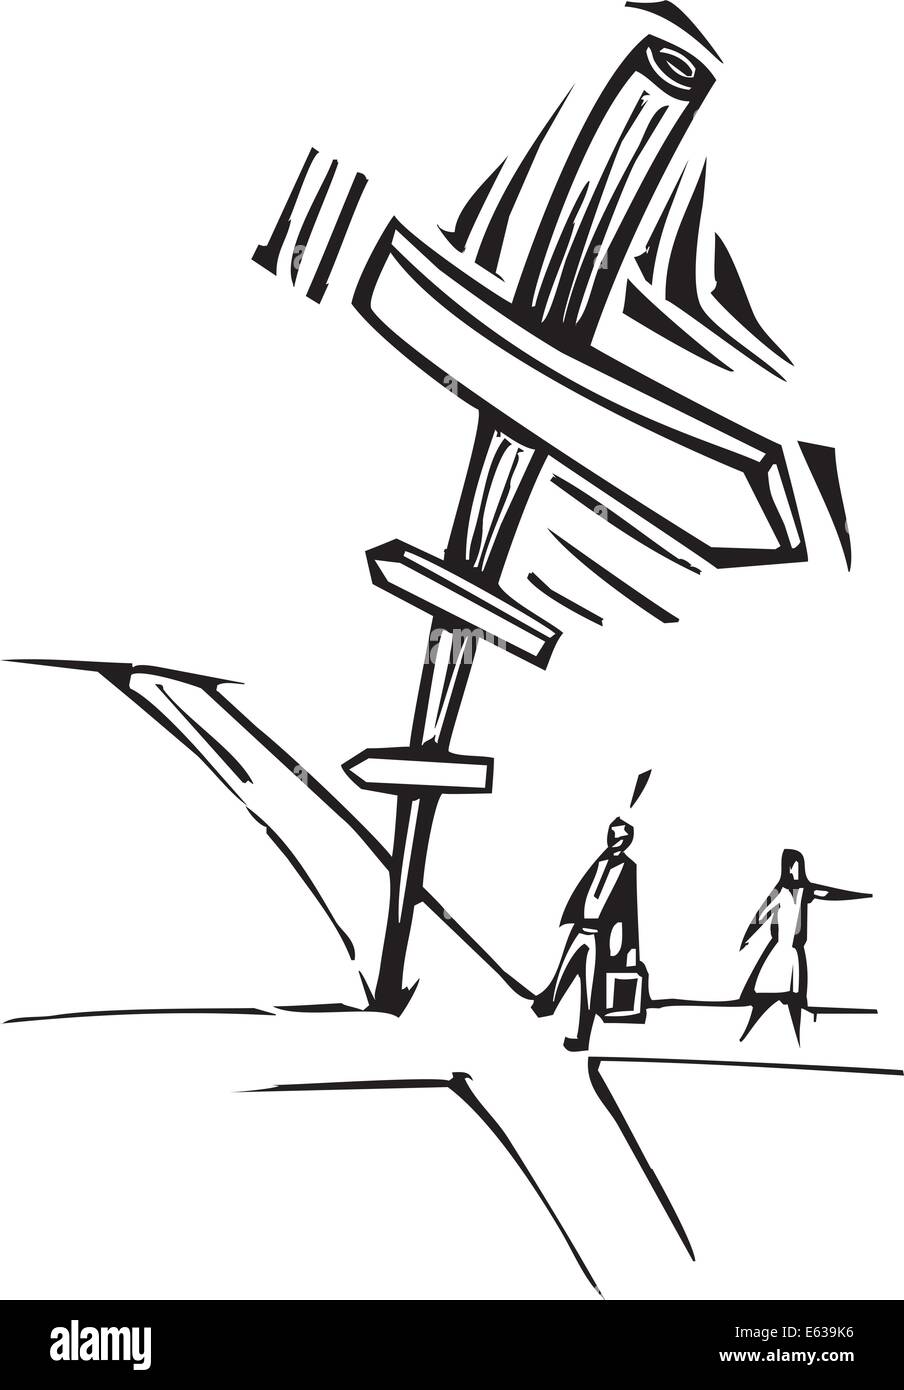 Holzschnitt-Stil Bild von zwei Geschäftsleuten an Kreuzung mit einem Schild. Stock Vektor